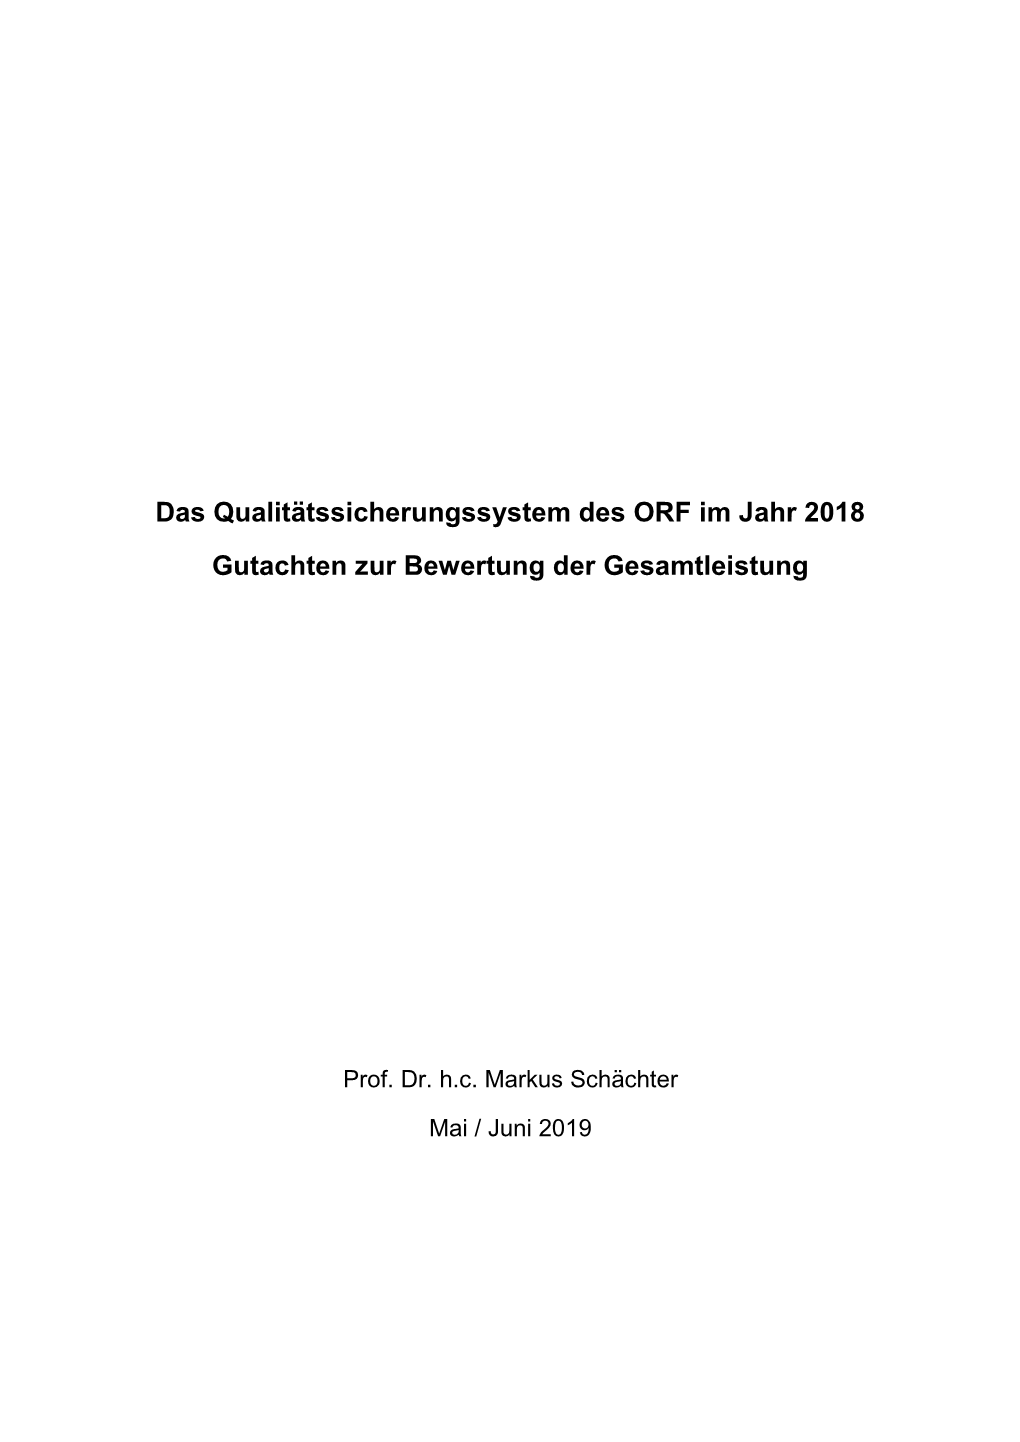 Das Qualitätssicherungssystem Des ORF Im Jahr 2018 Gutachten Zur Bewertung Der Gesamtleistung